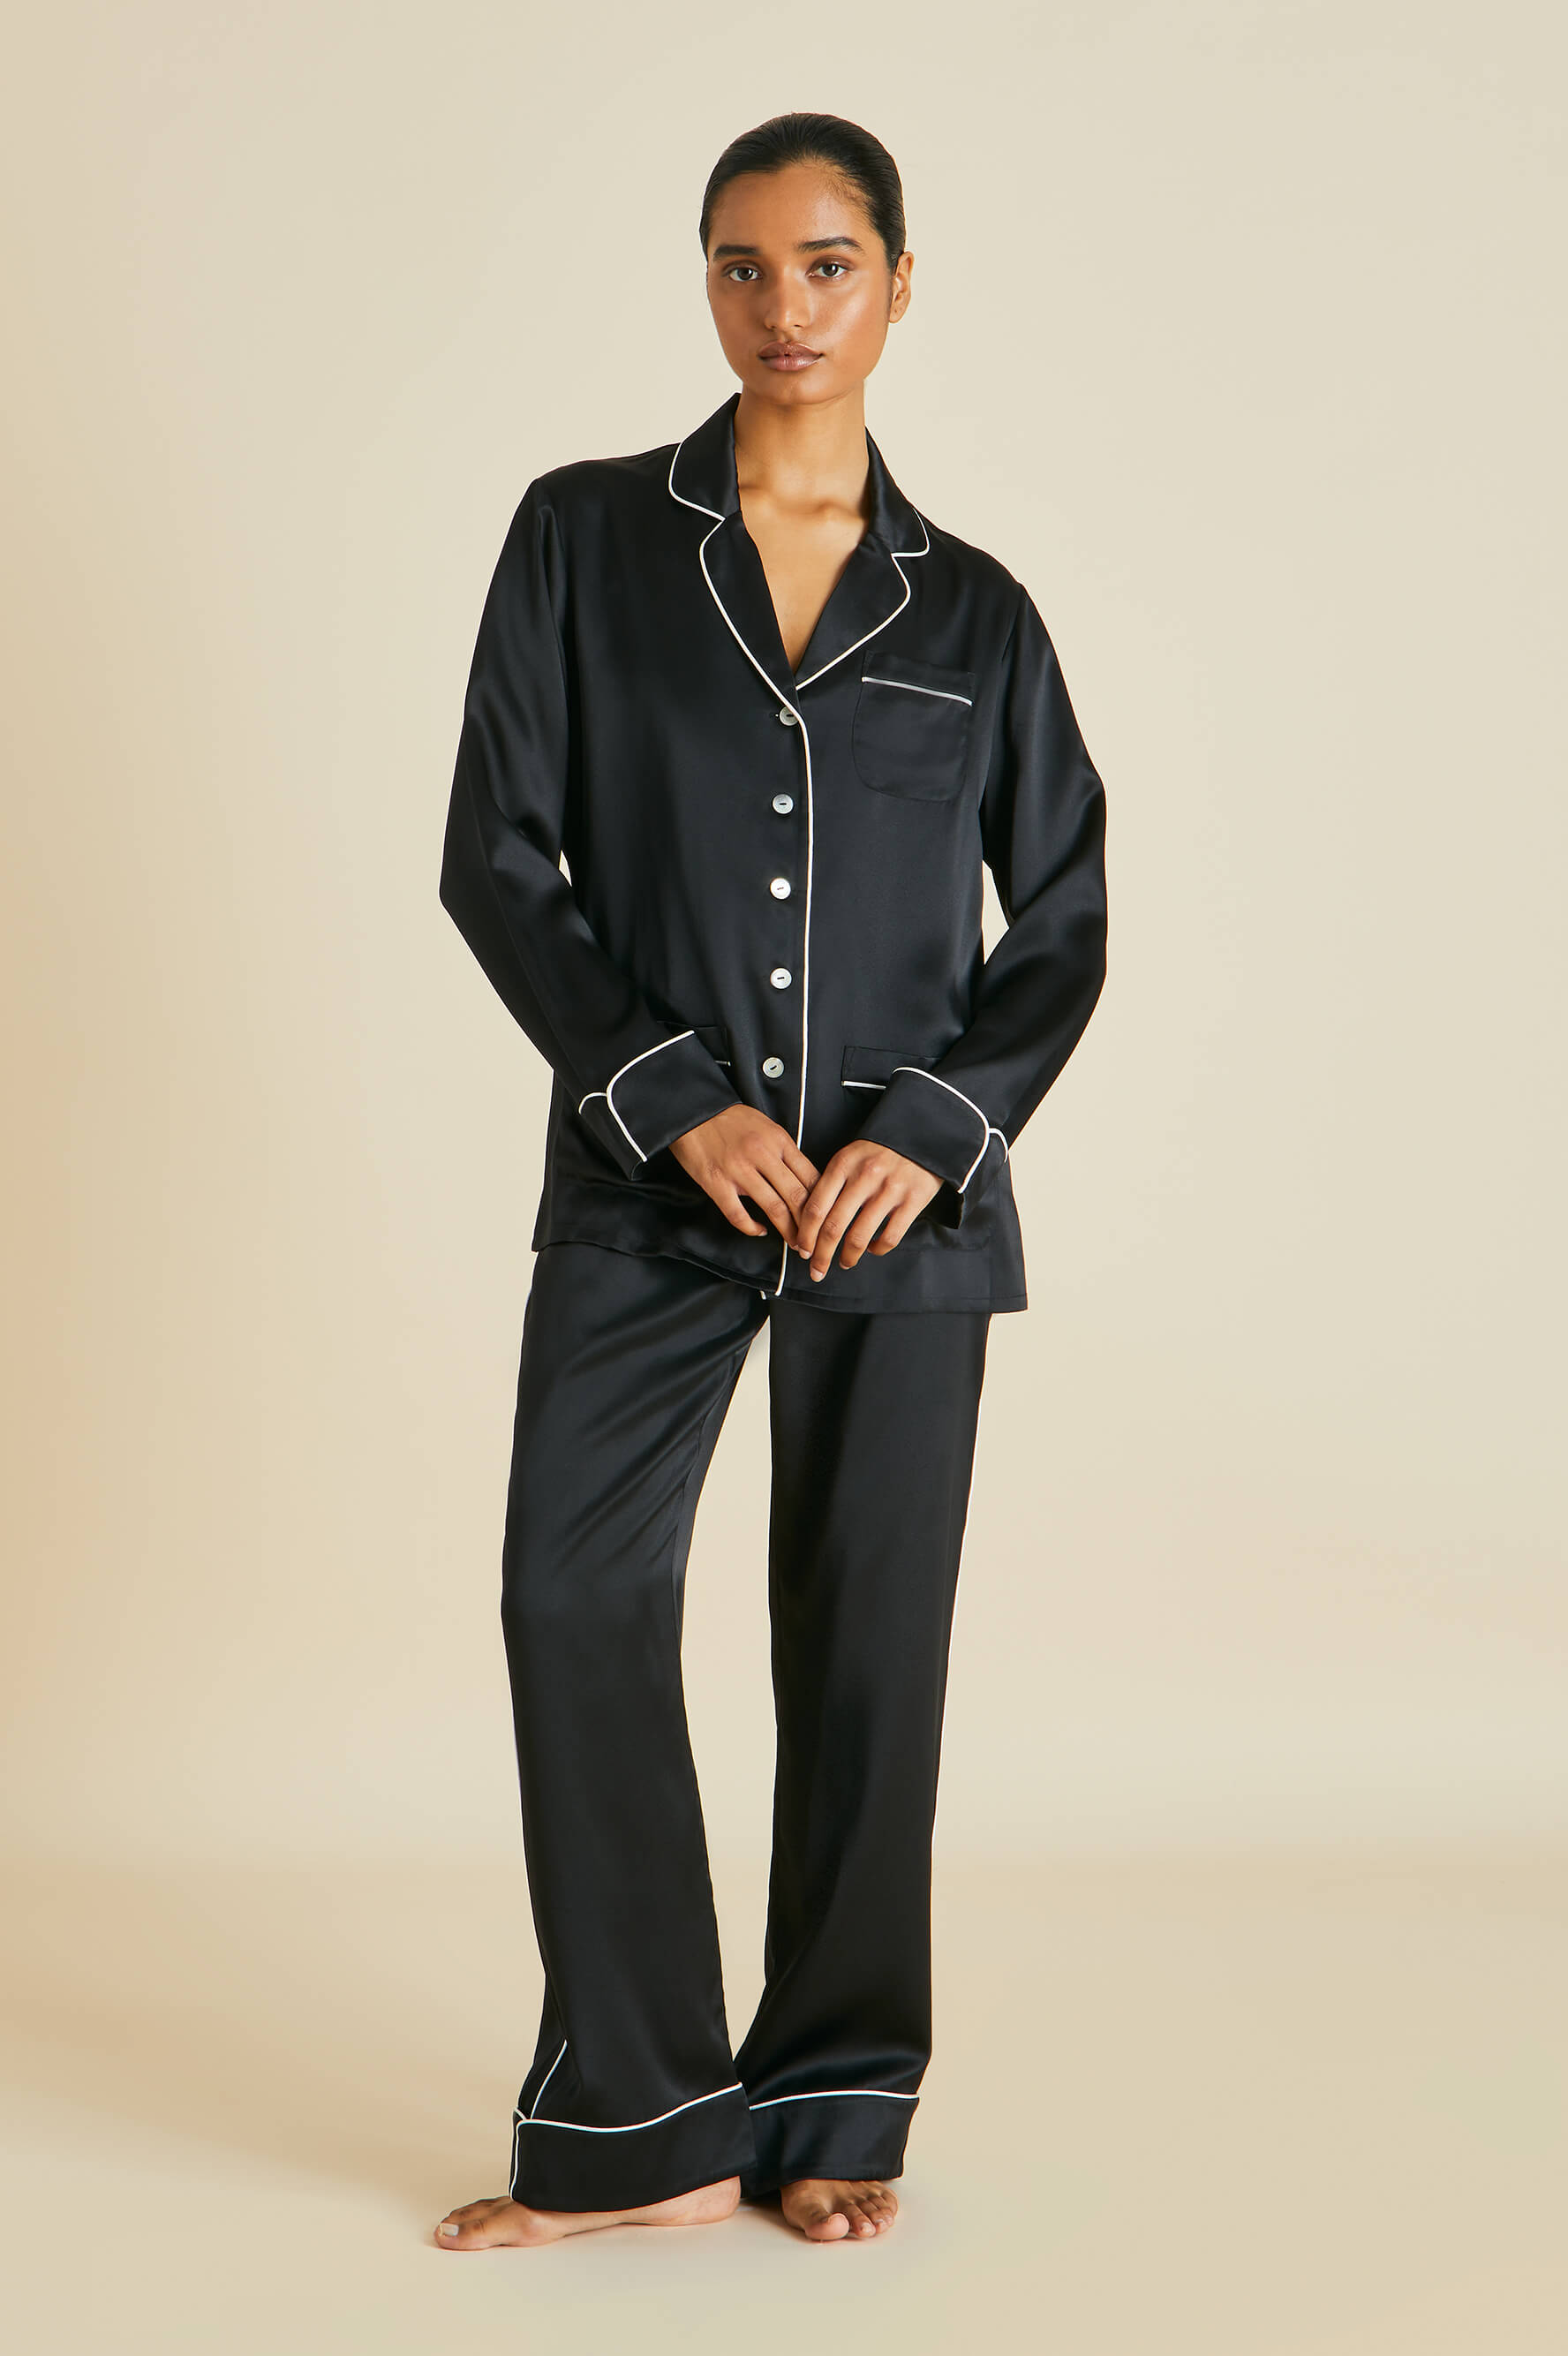 The Coco Jet Black Luxury Silk Pyjamas